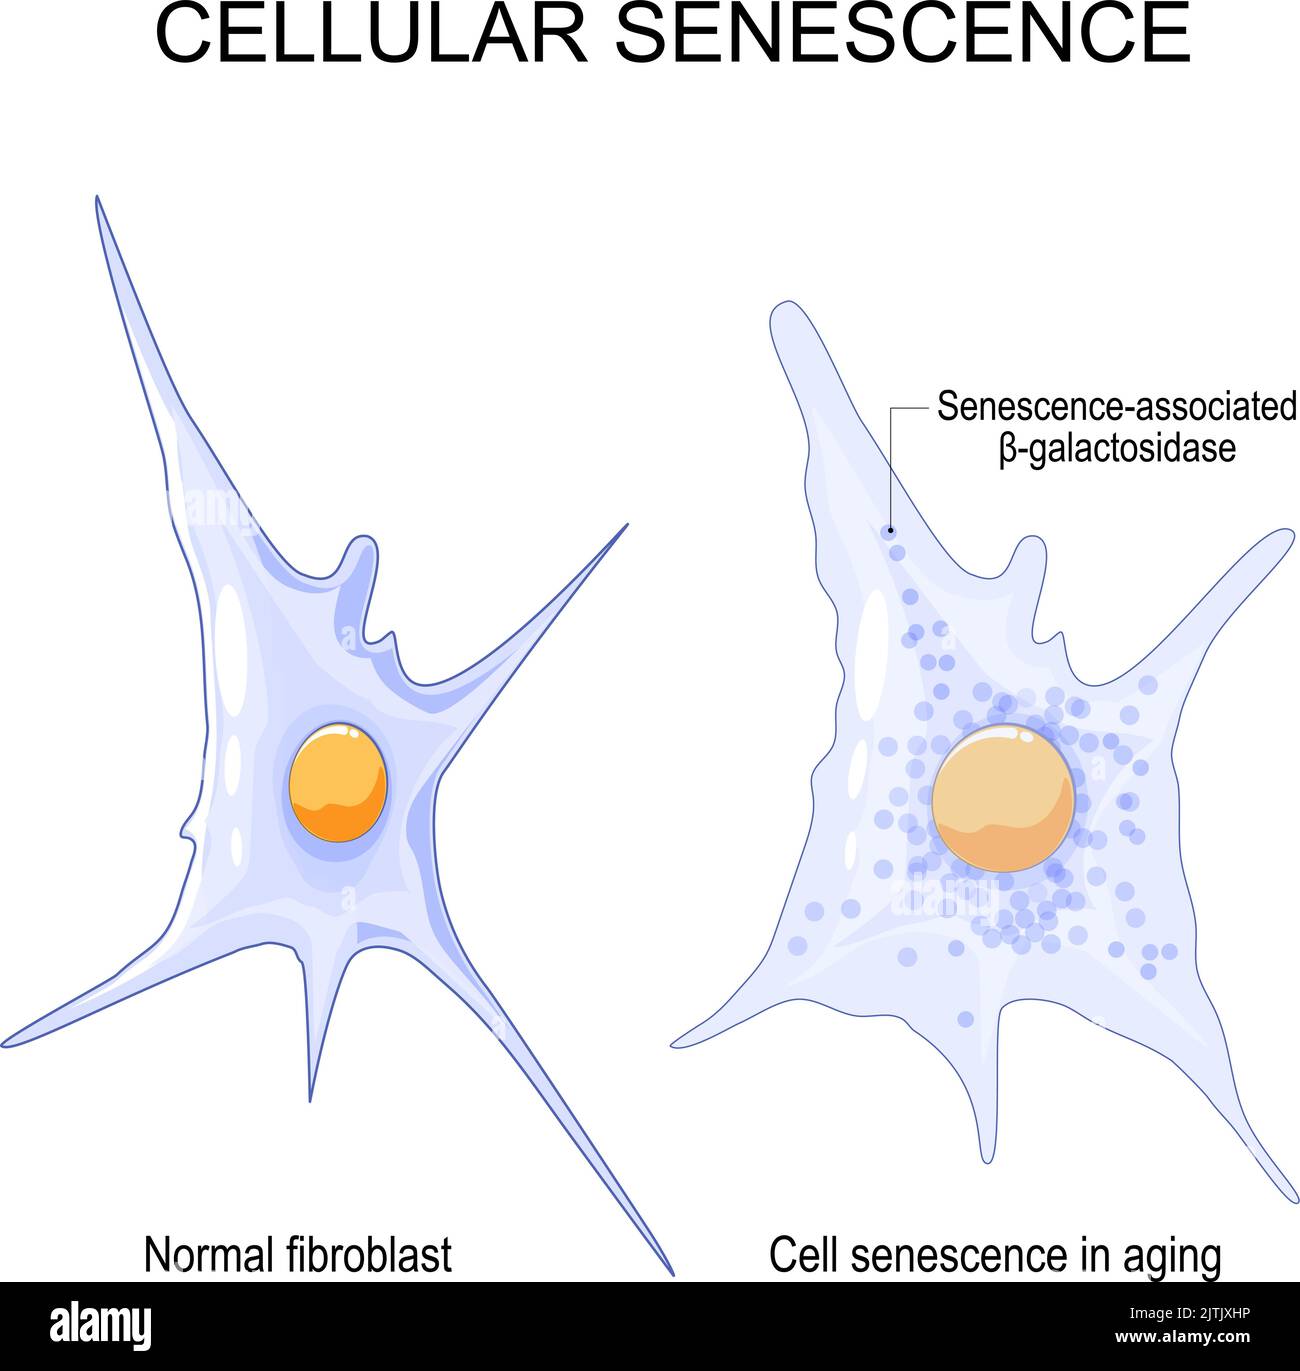 Zelluläre Seneszenz. Verändert die seneszenten Zellen während des Alterns. Vergleich und Unterschied zwischen normaler Fibroblast und Zellseneszenz im Alter. Vektor Stock Vektor